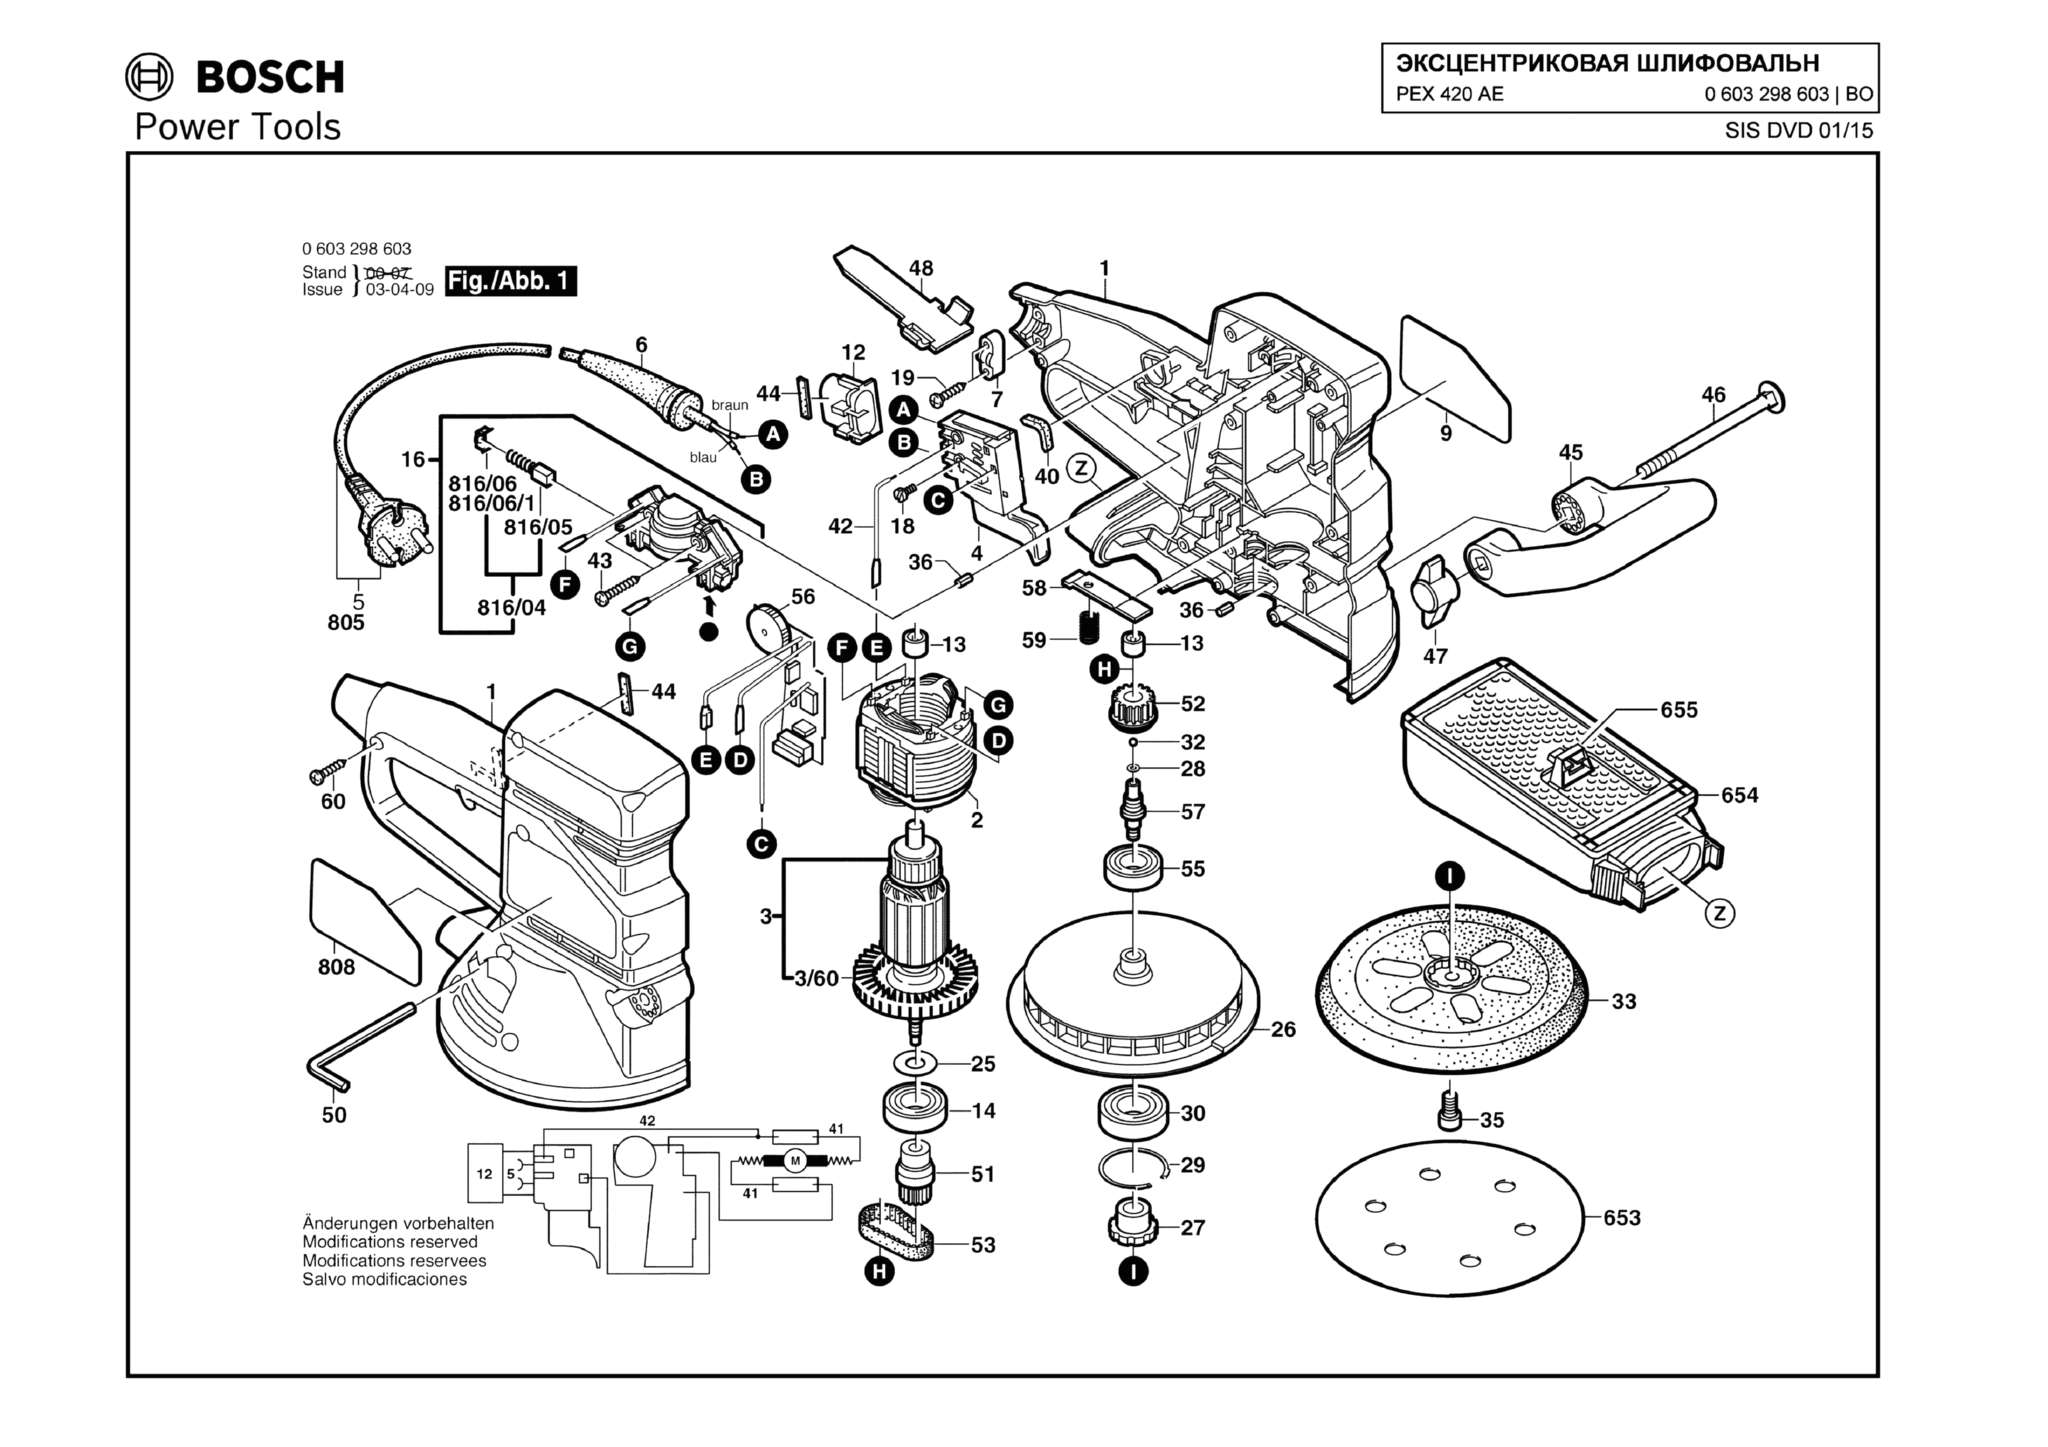 Запчасти, схема и деталировка Bosch PEX 420 AE (ТИП 0603298603)